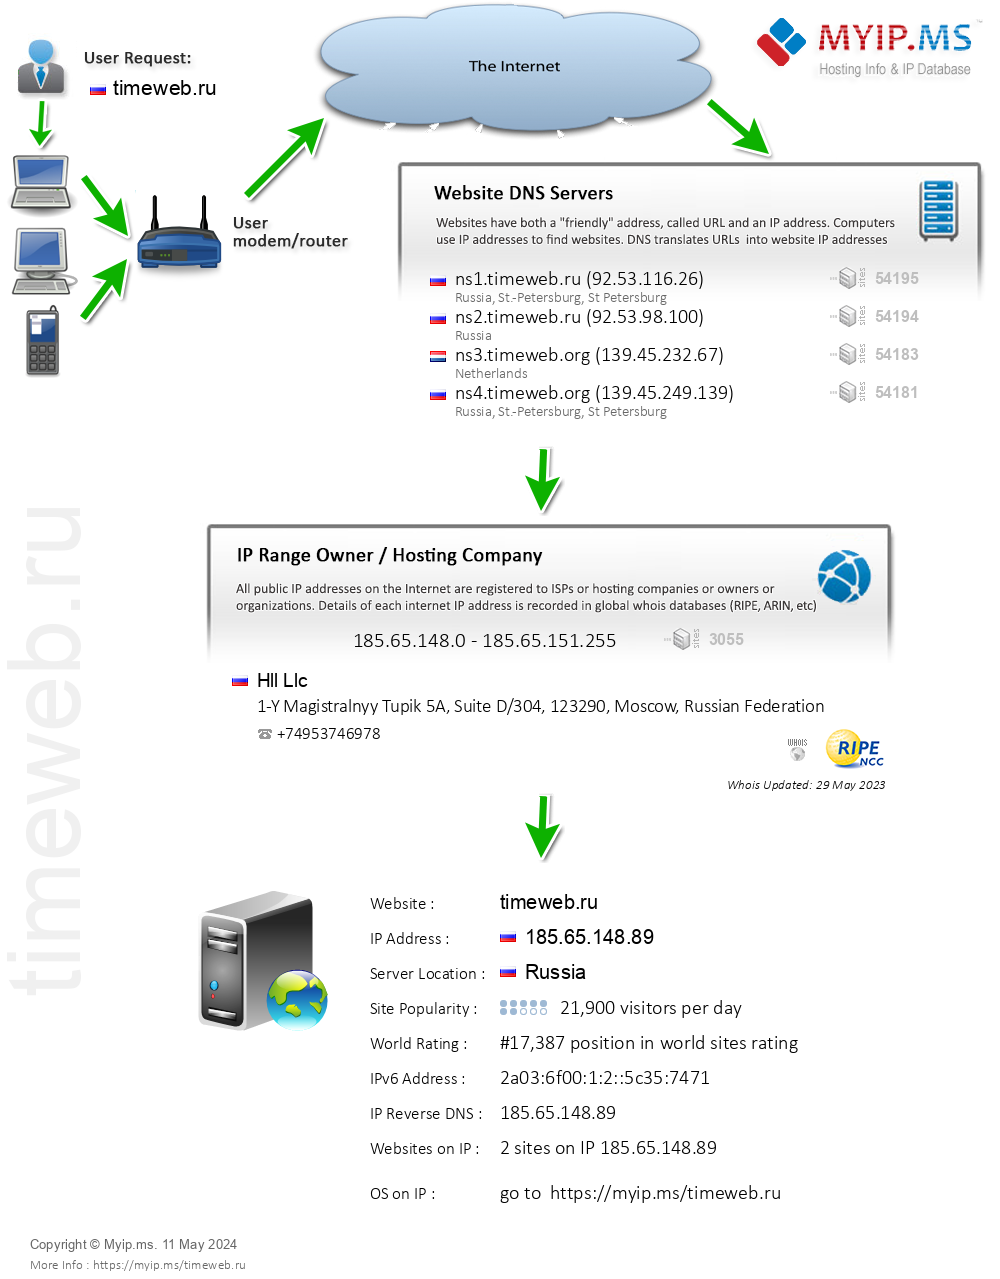 Timeweb.ru - Website Hosting Visual IP Diagram